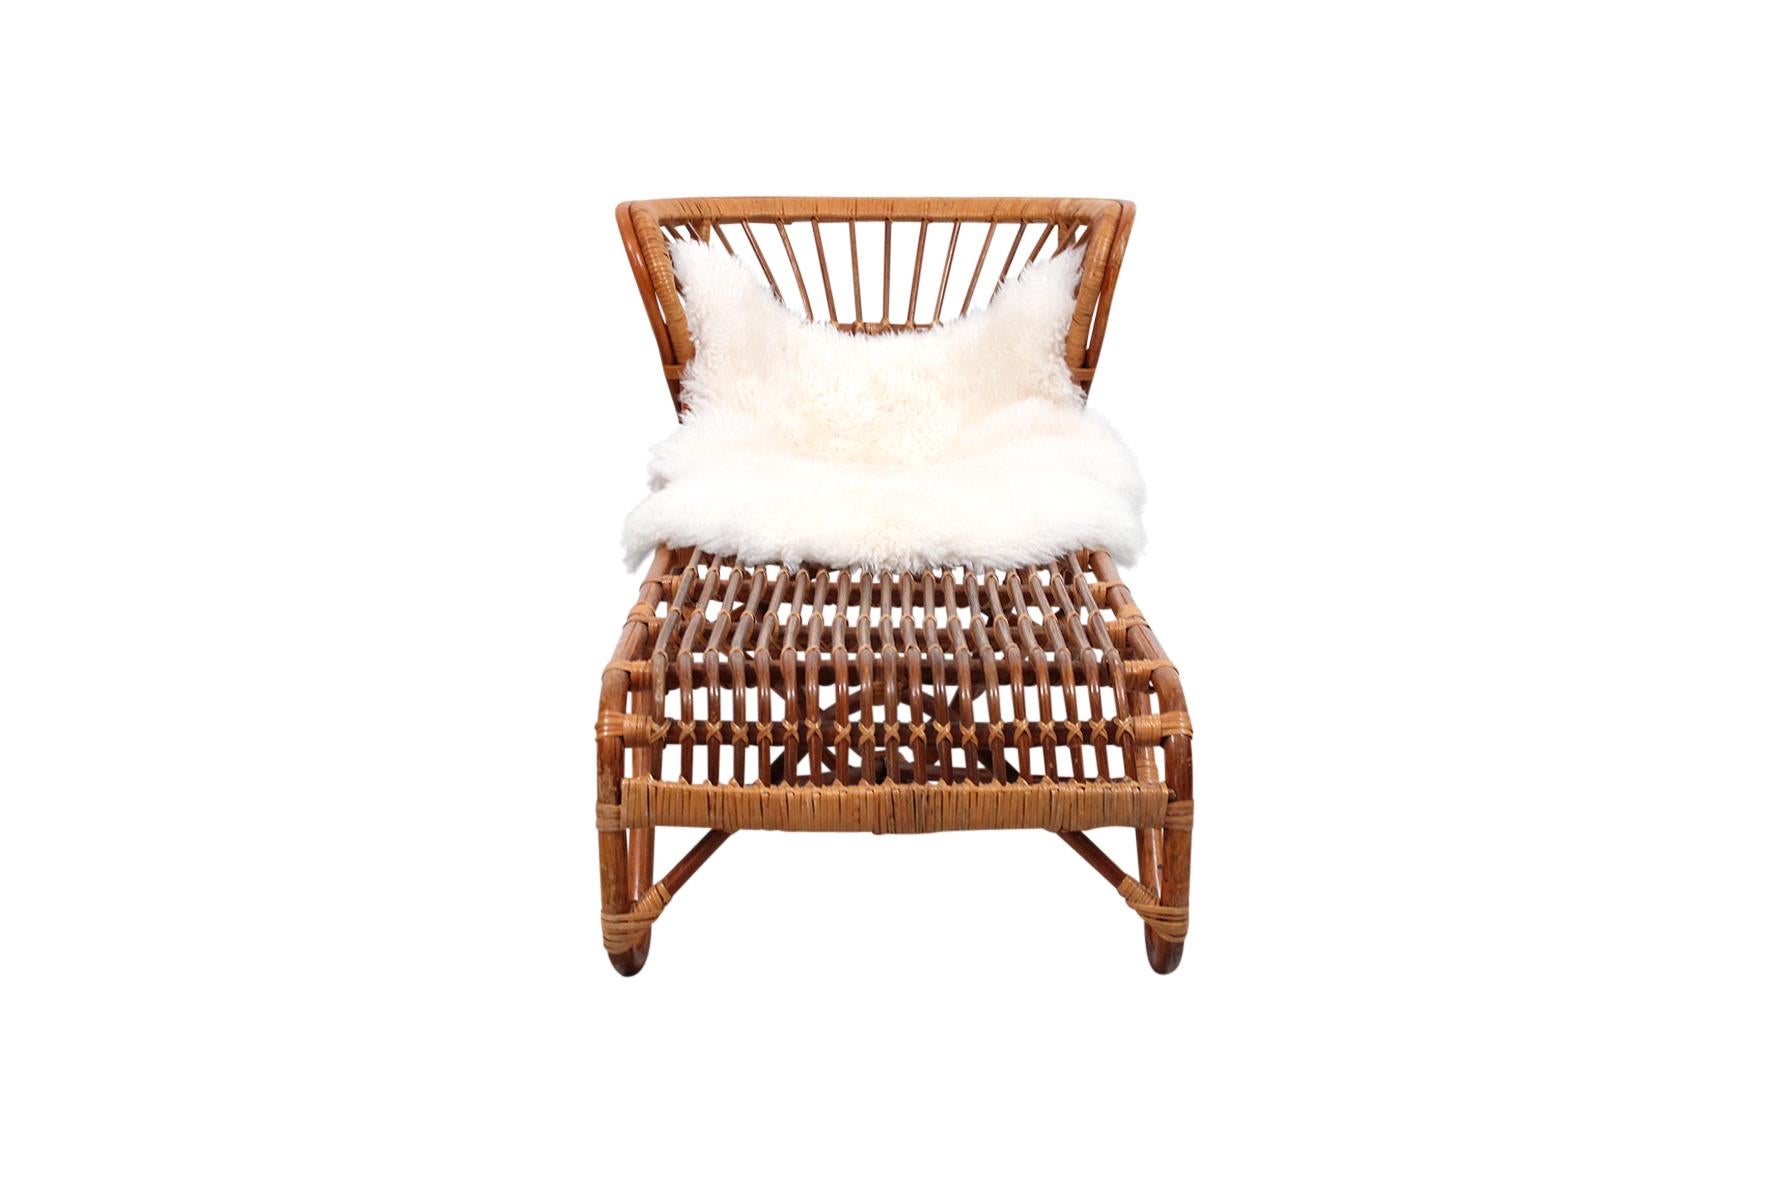 Rare Franco Albini rattan and bamboo chaise lounge chair designed in the 1960s for Vittorio Bonacina.